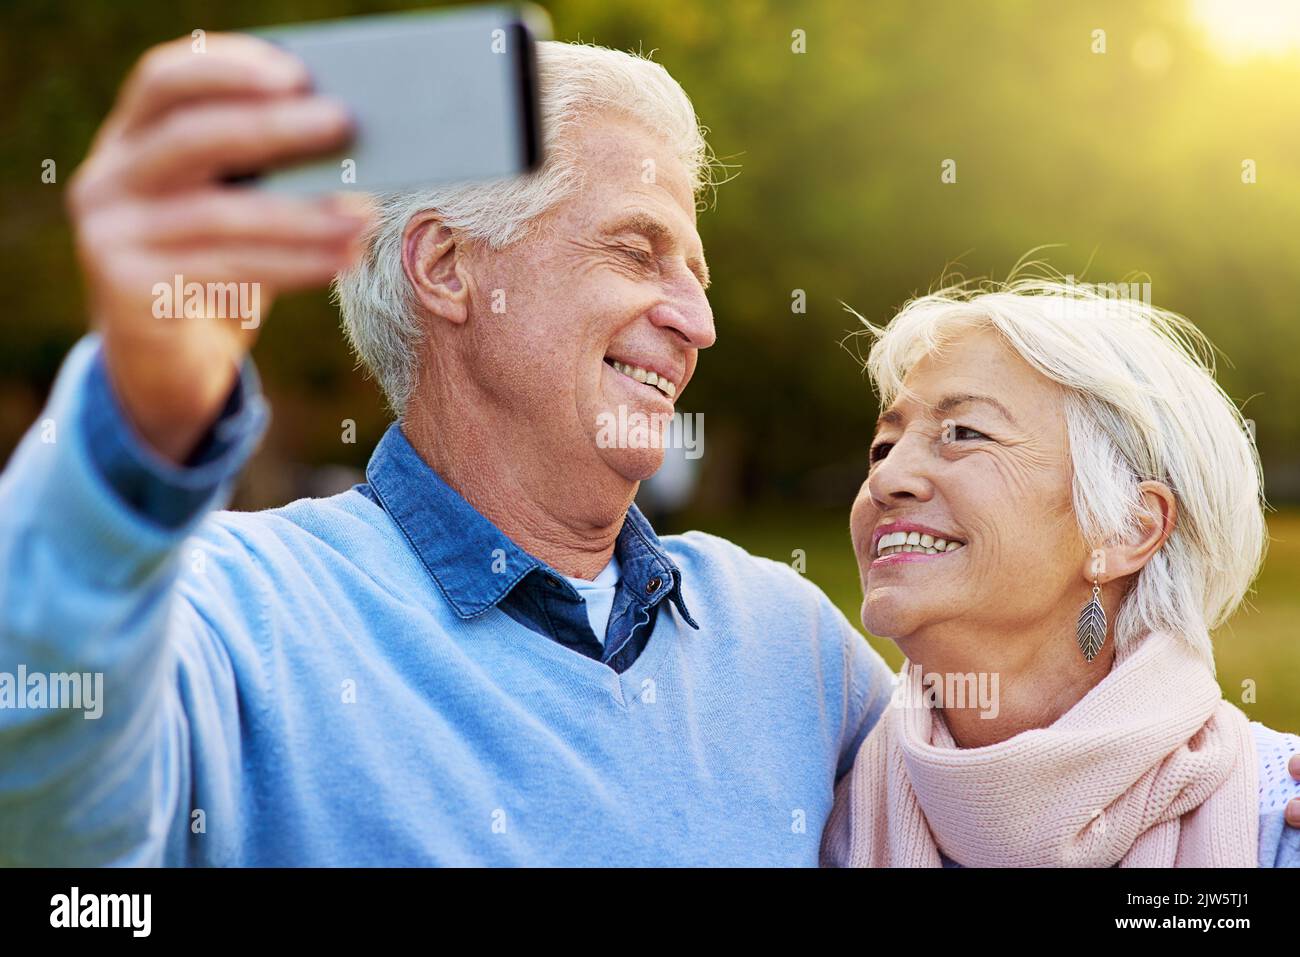 Erinnerungen festhalten. Ein Seniorenpaar fotografiert gemeinsam in einem Park. Stockfoto